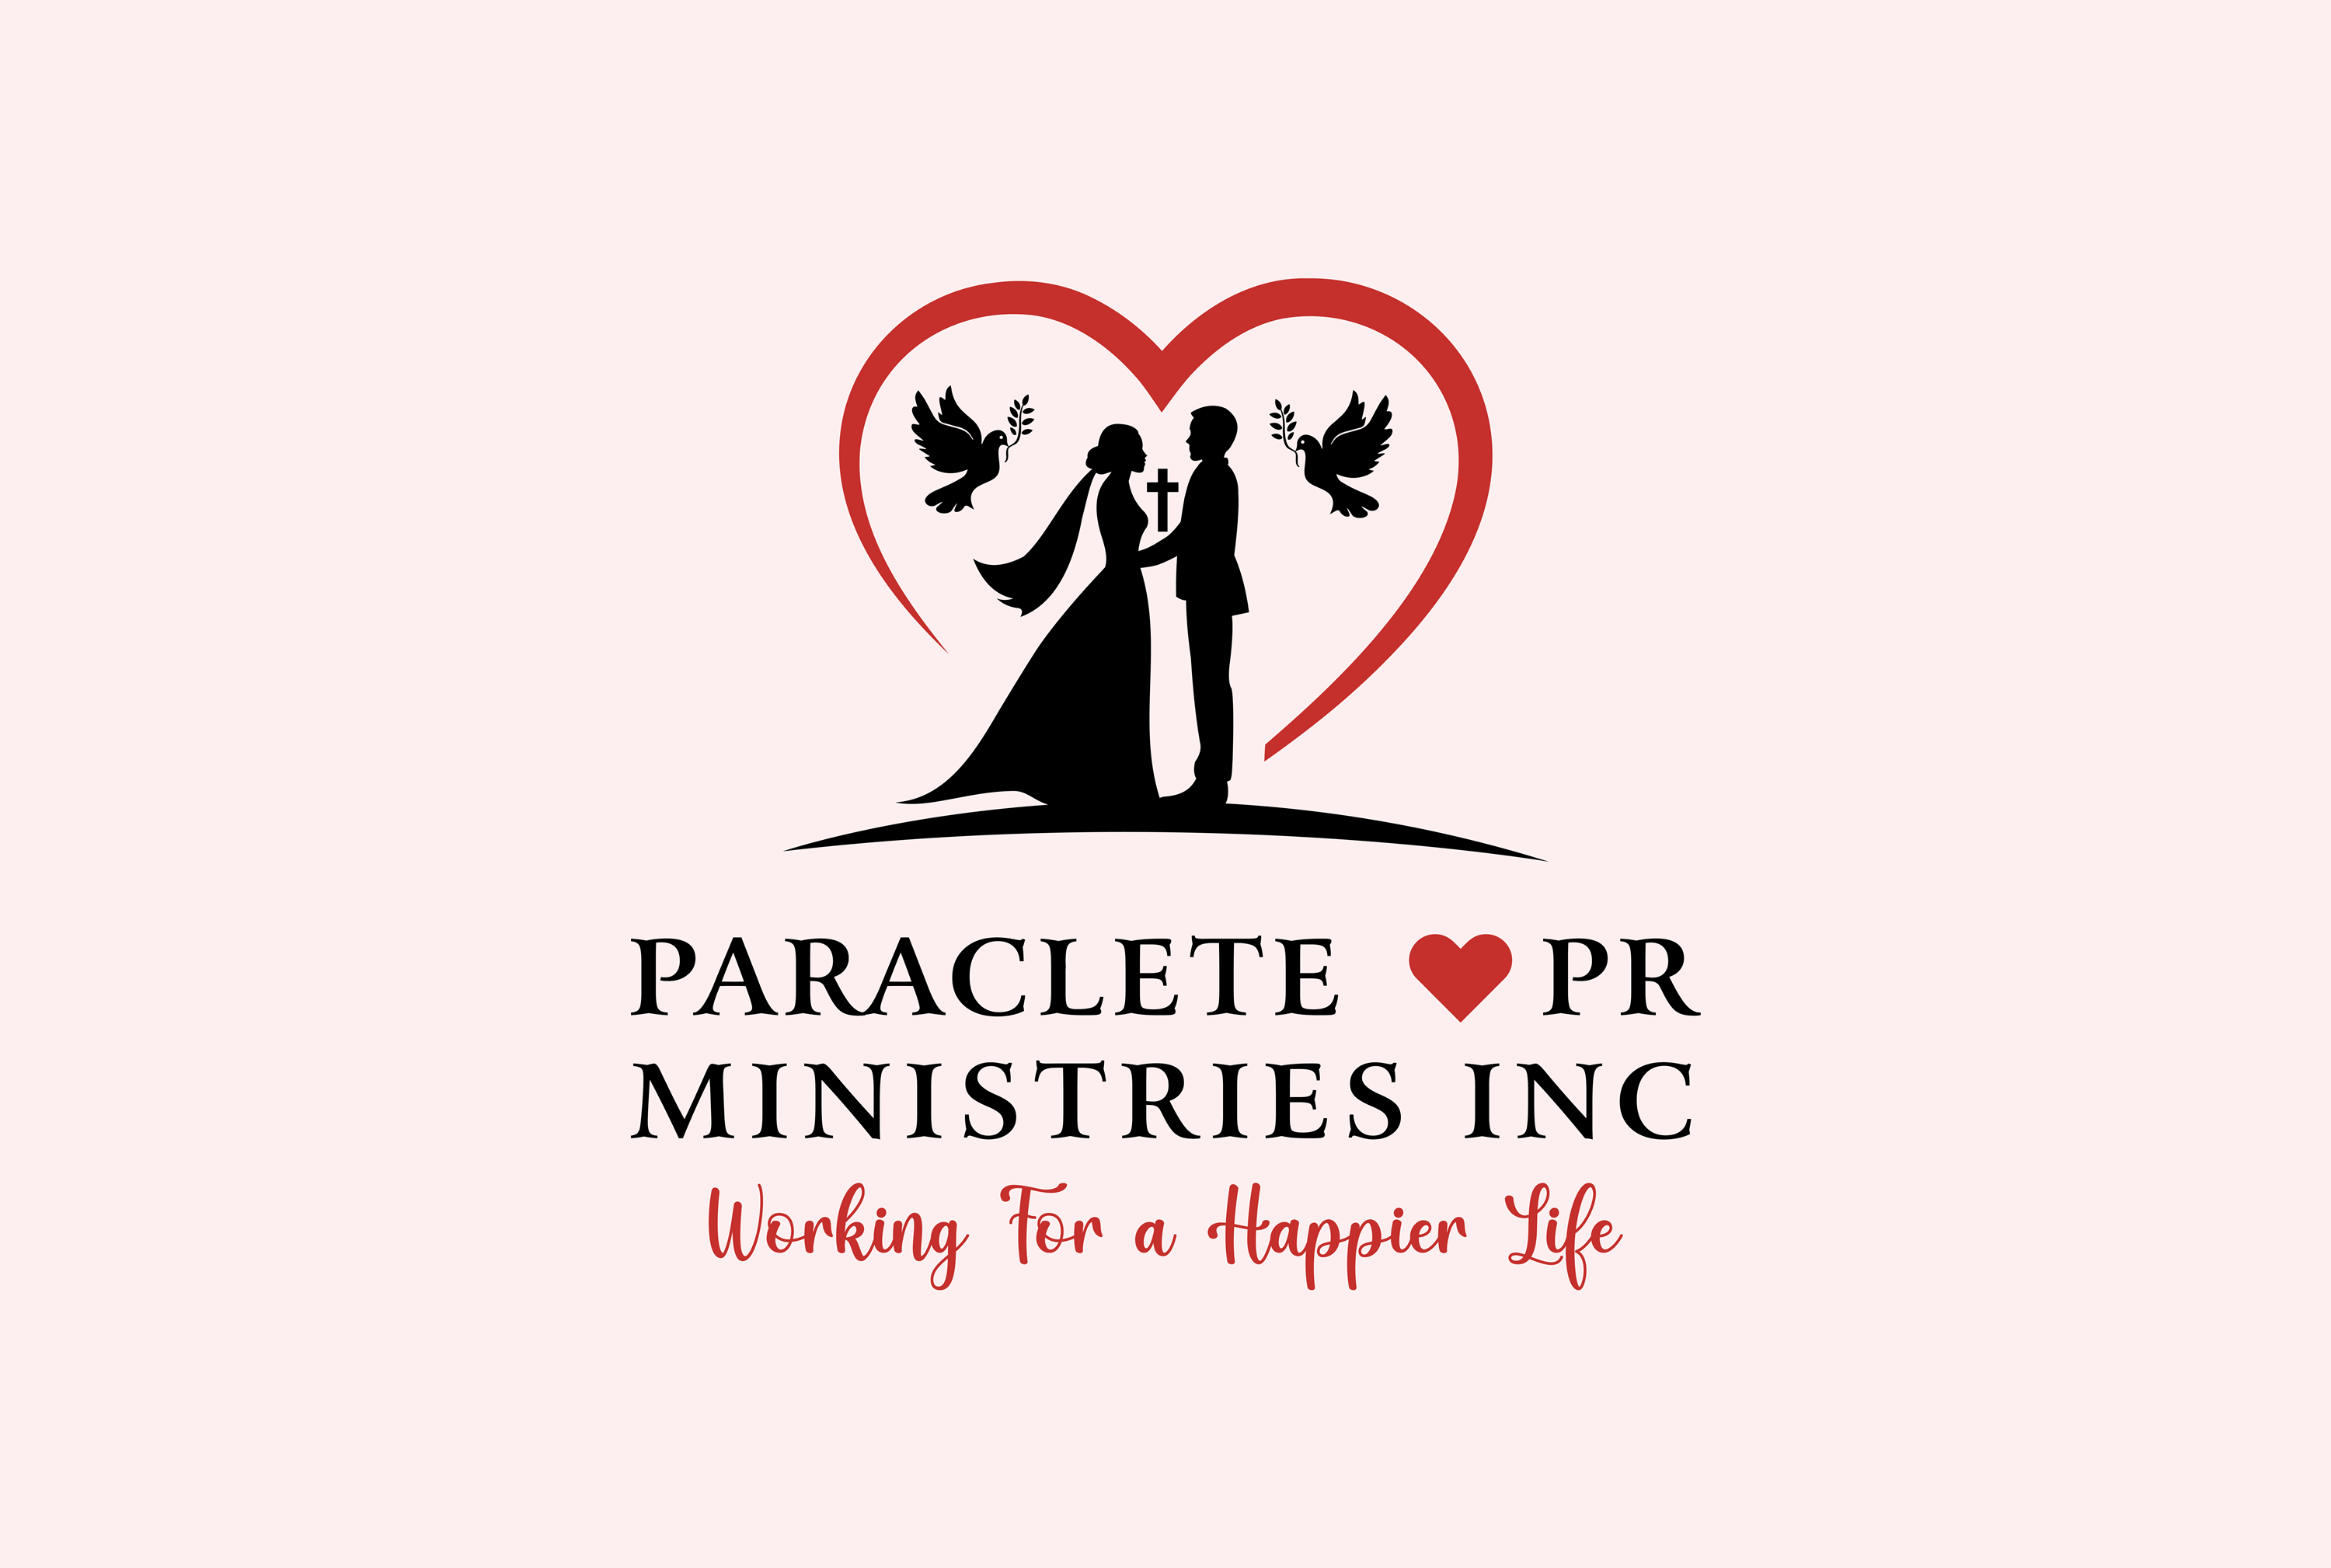 Paraclete♥Pr Ministries Inc.